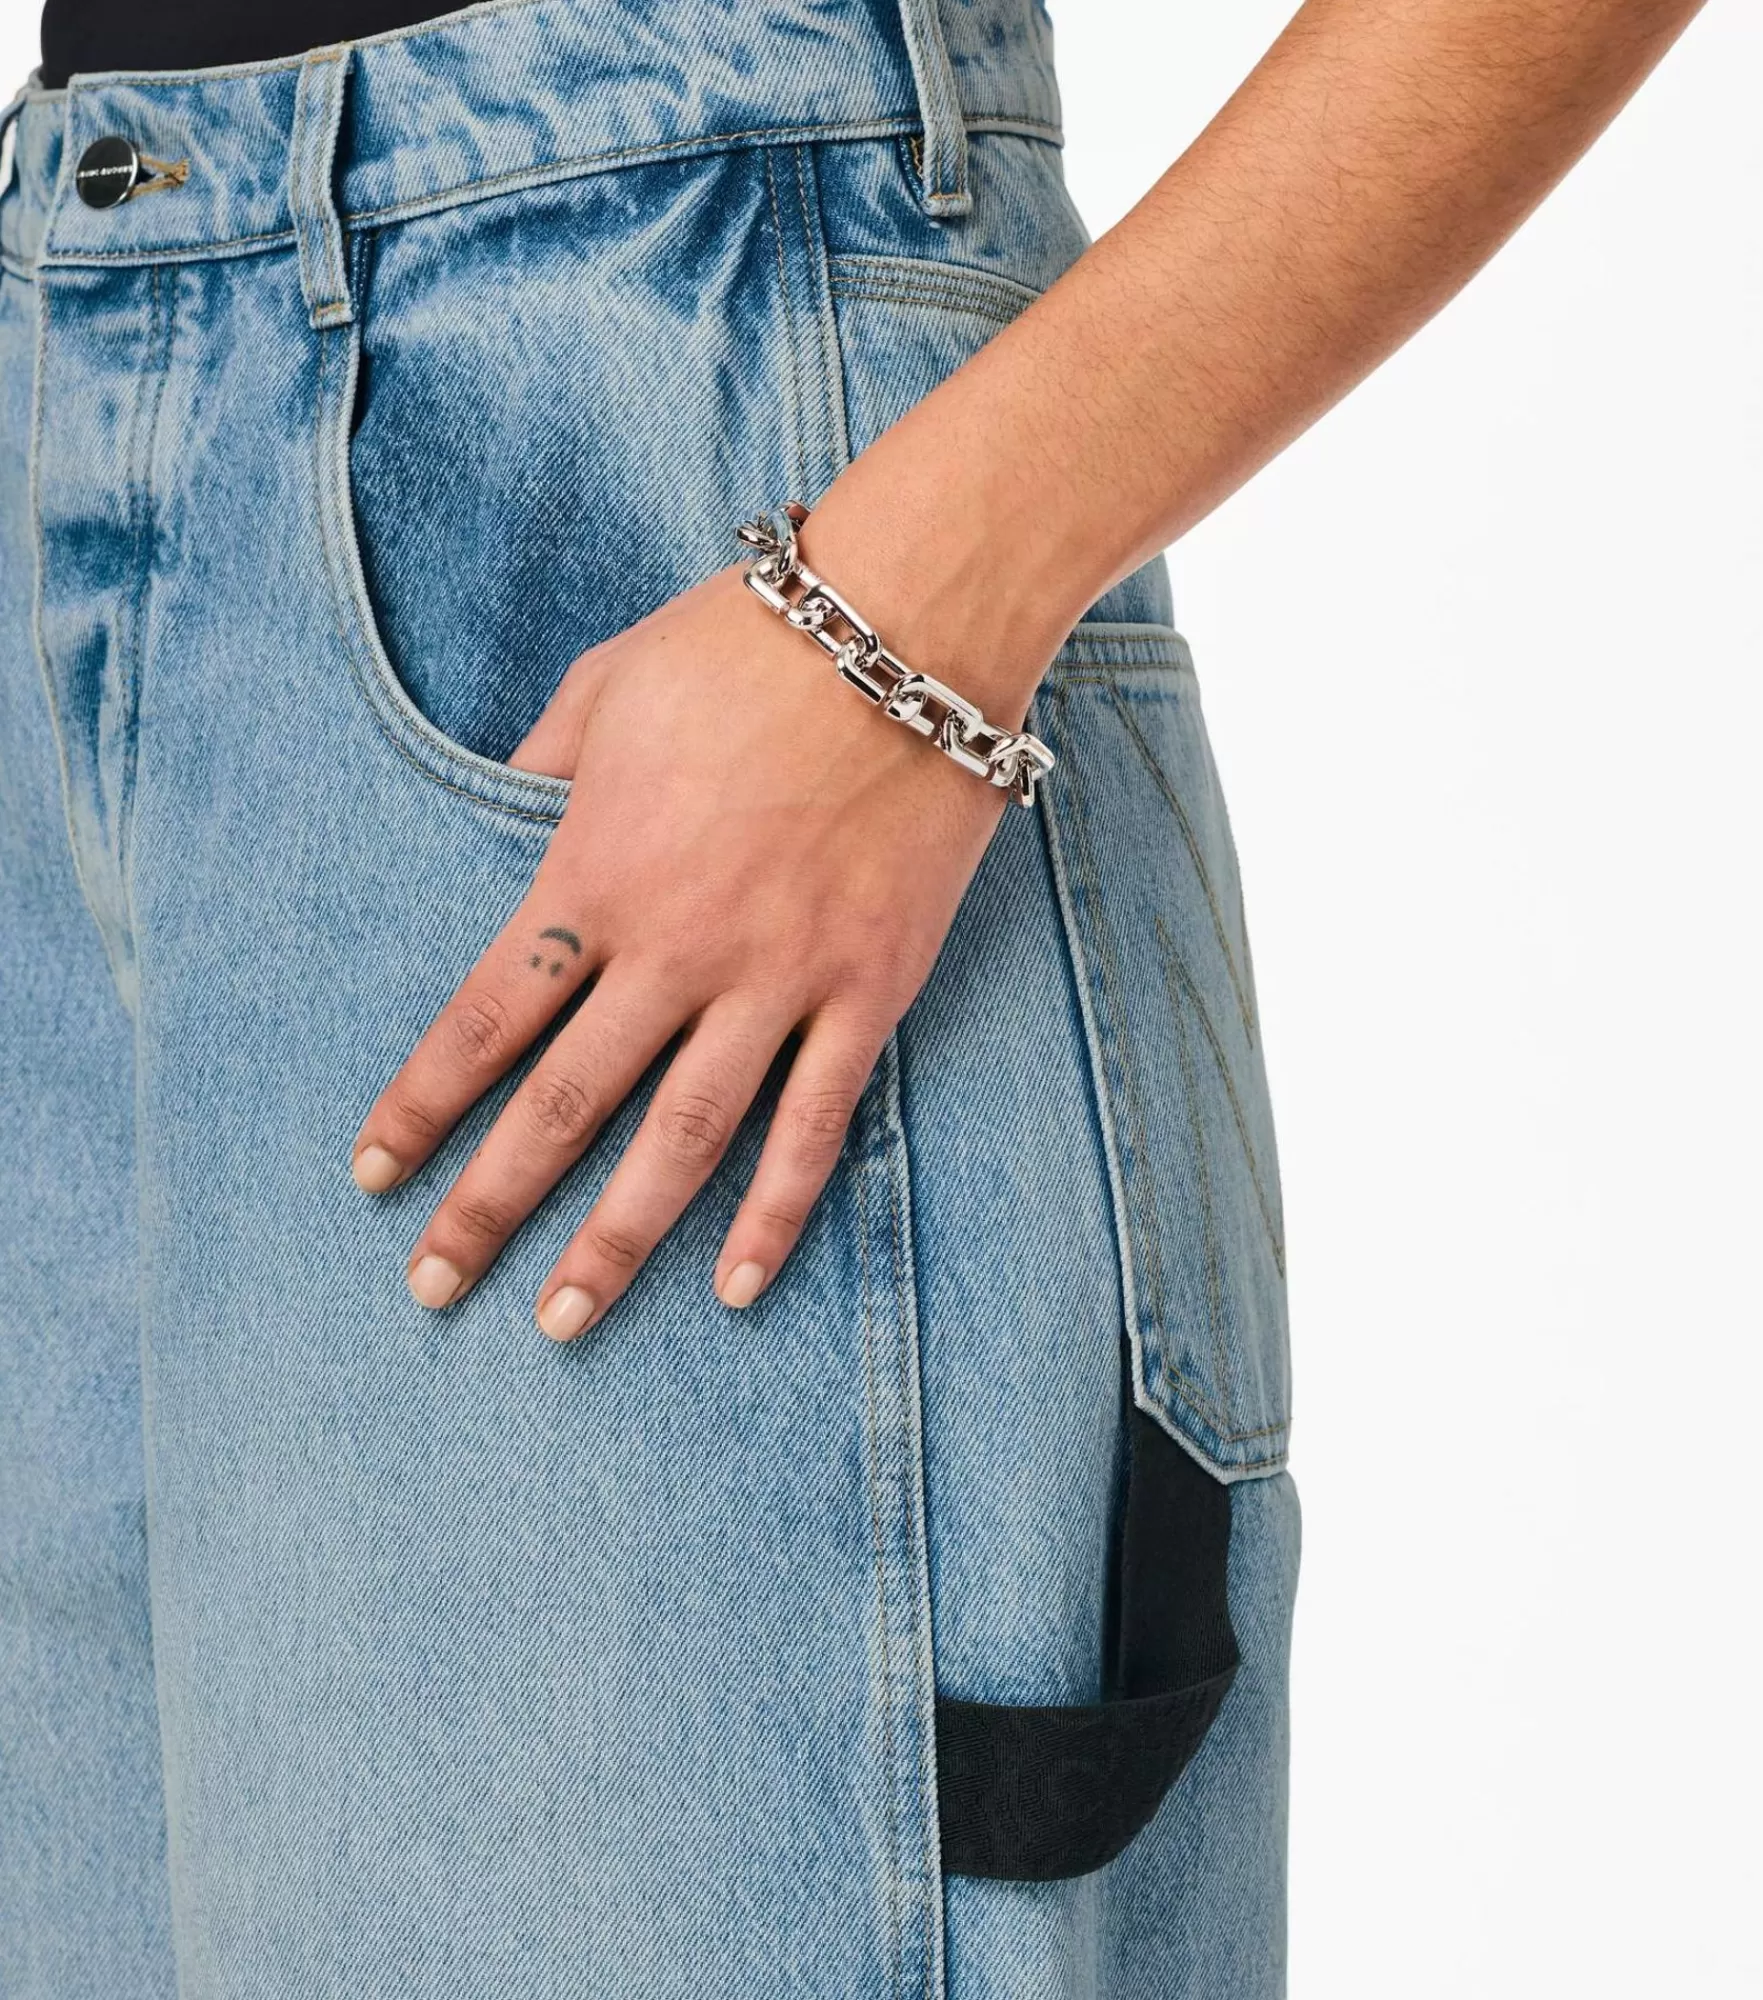 Marc Jacobs The J Marc Chain Link Bracelet | Bracelets